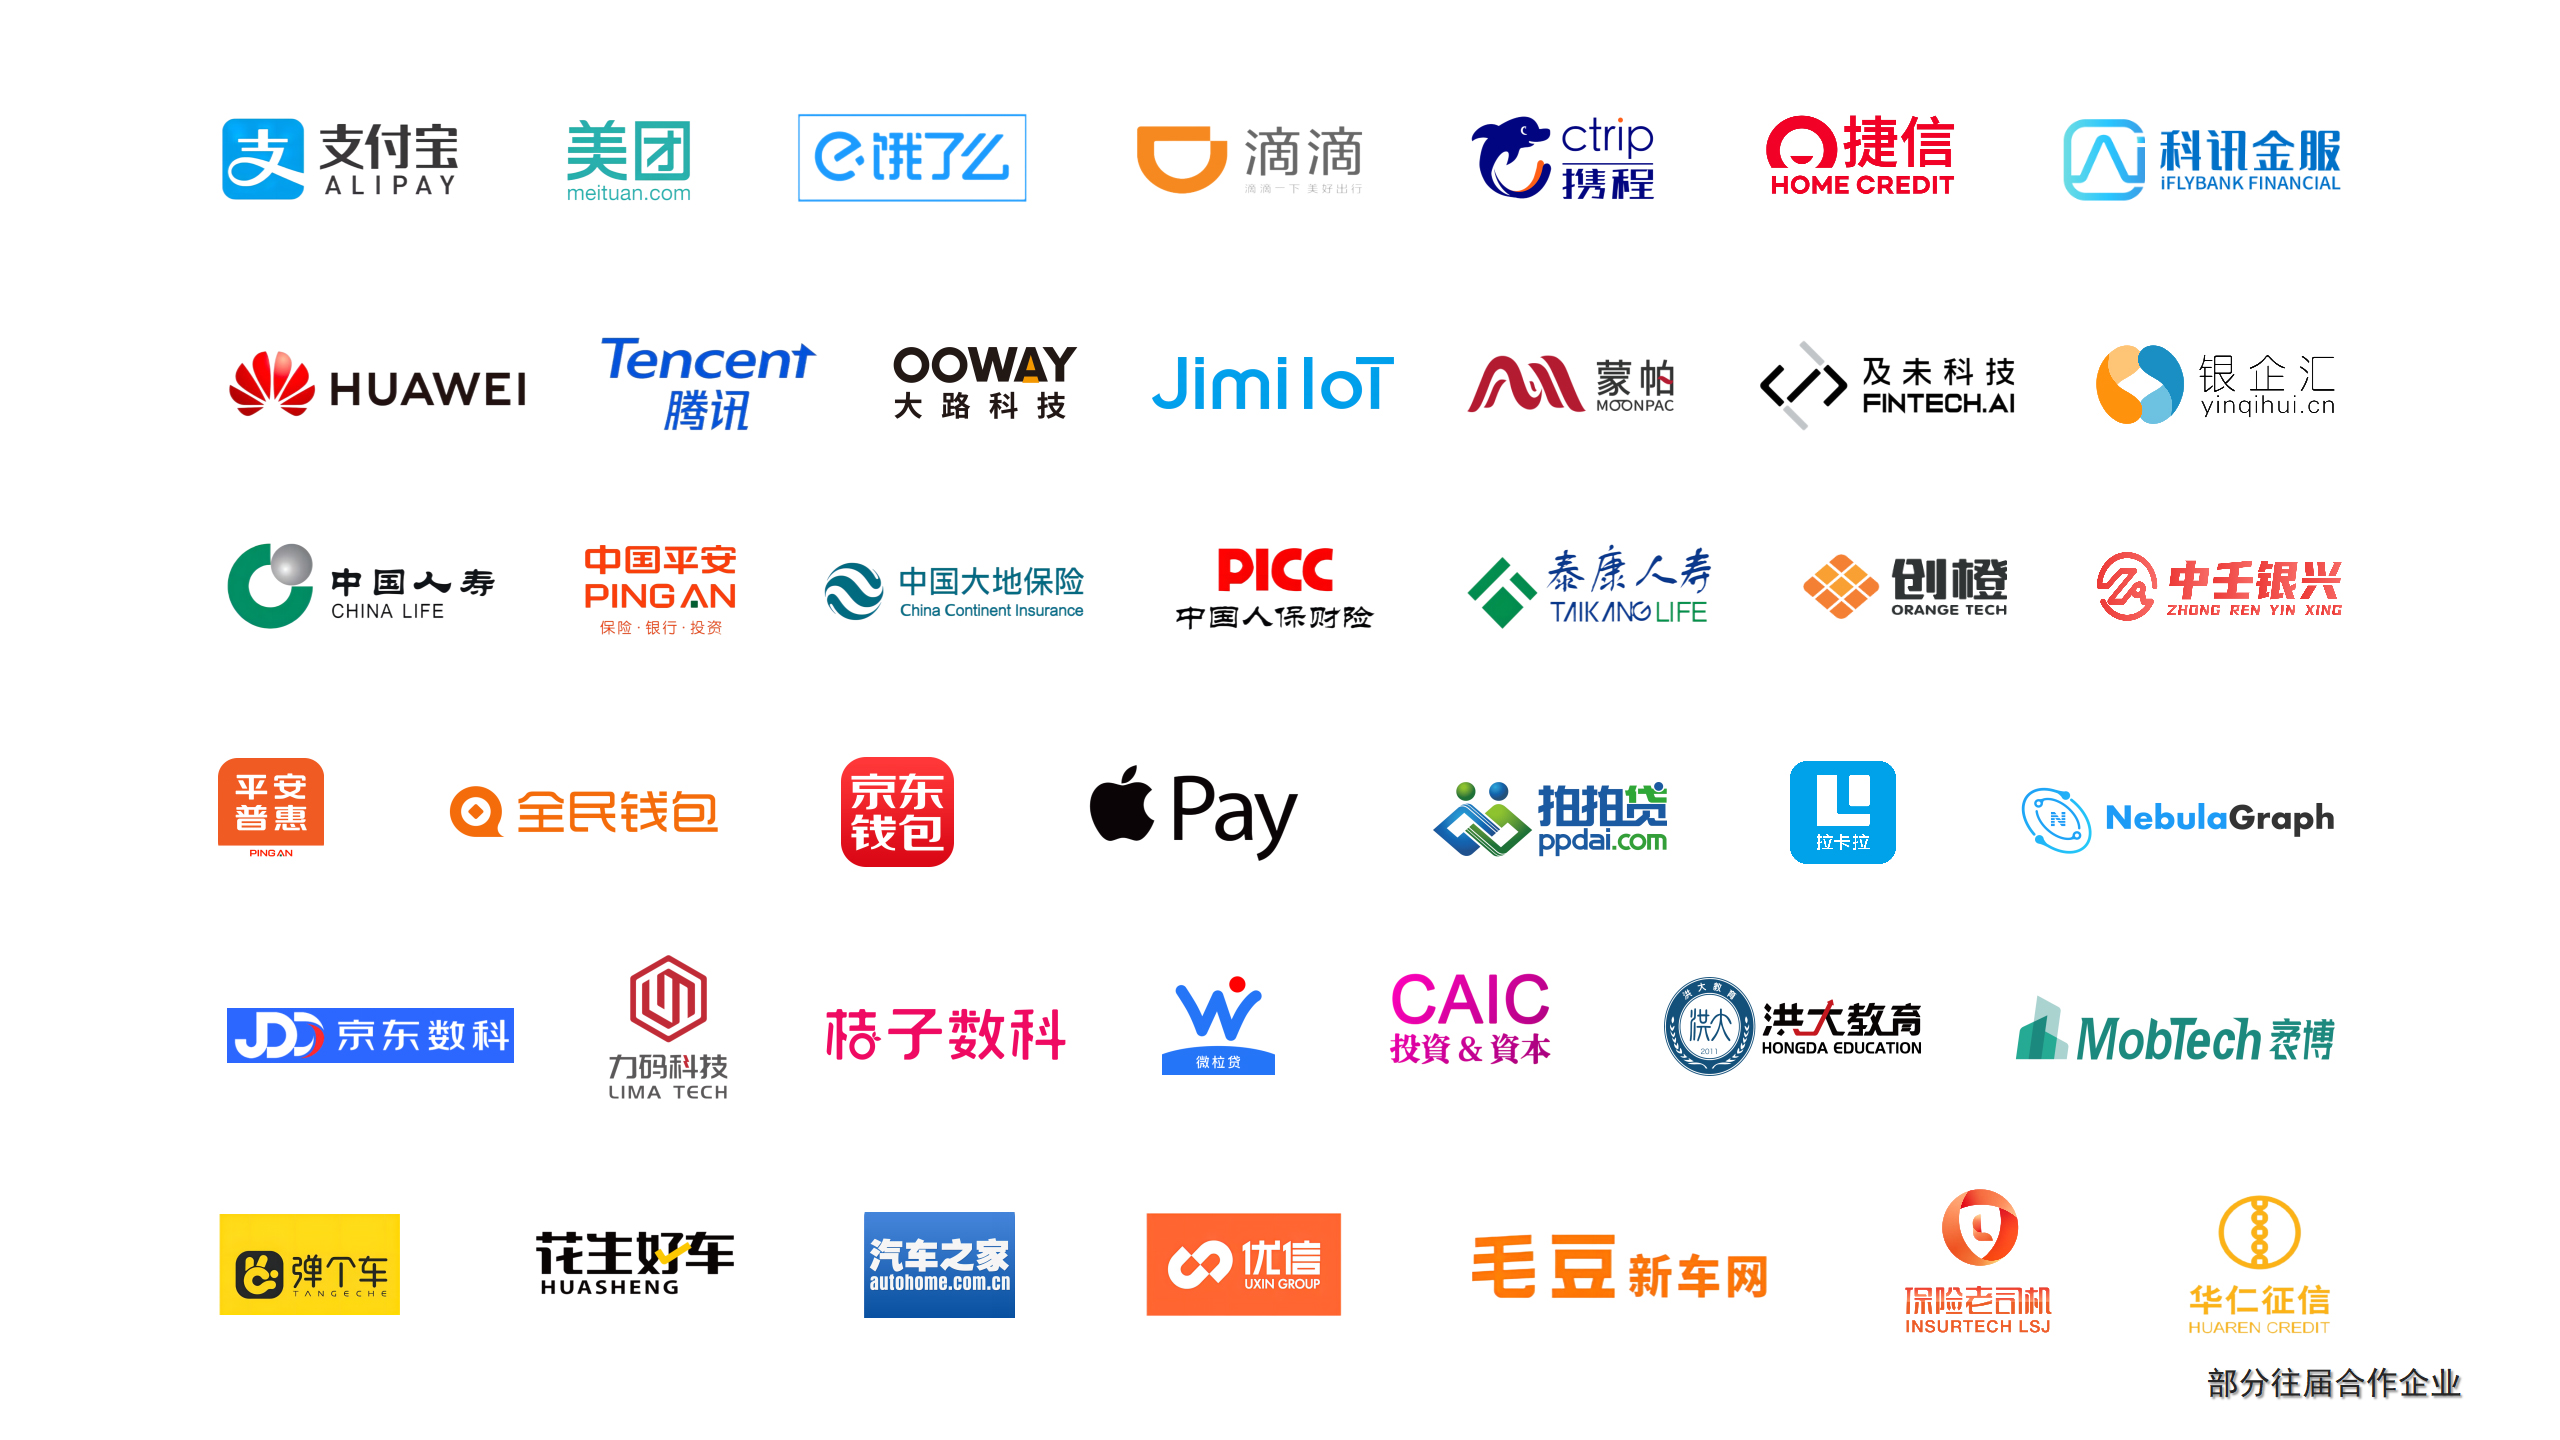 2022第四届中国金融科技国际峰会